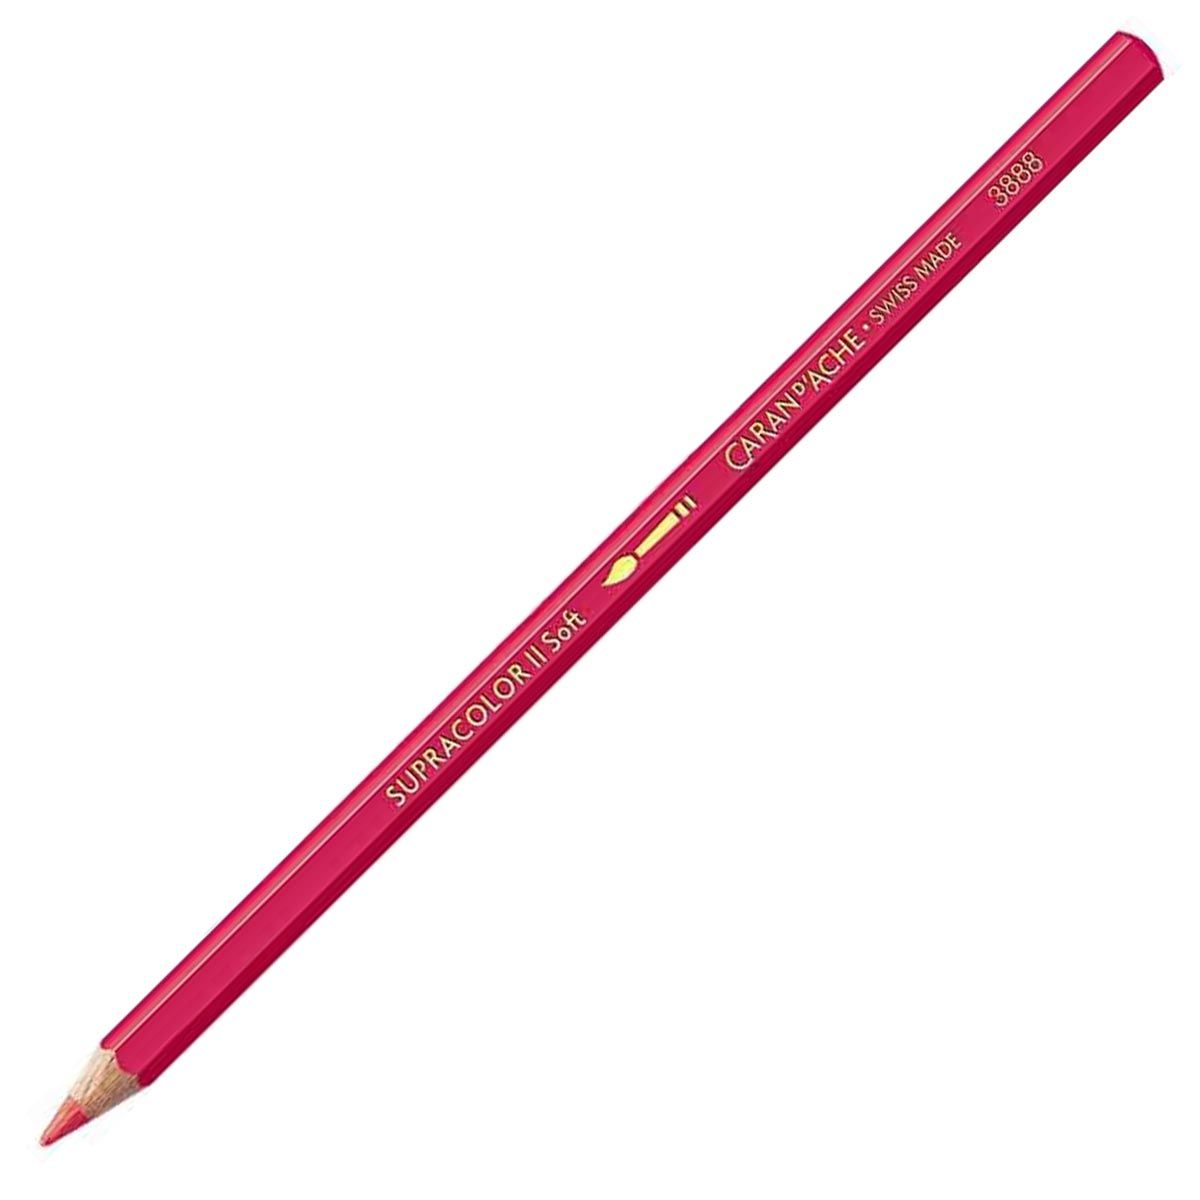 Caran d'Ache Supracolor ll Soft Aquarelle Pencil Ruby Red 280